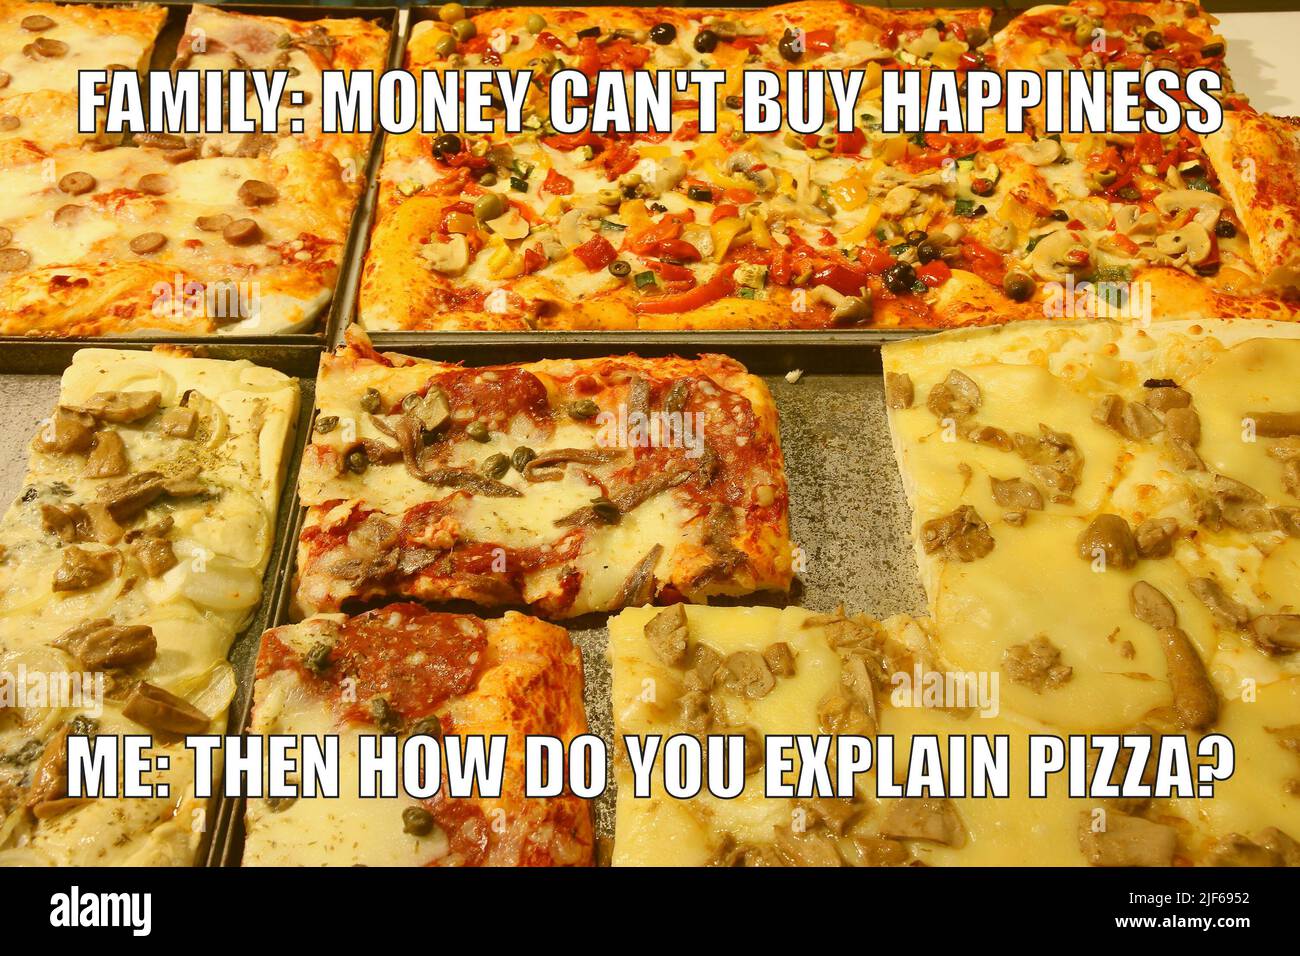 Pizza divertente meme per la condivisione dei social media. I soldi non possono comprare la felicità. Foto Stock